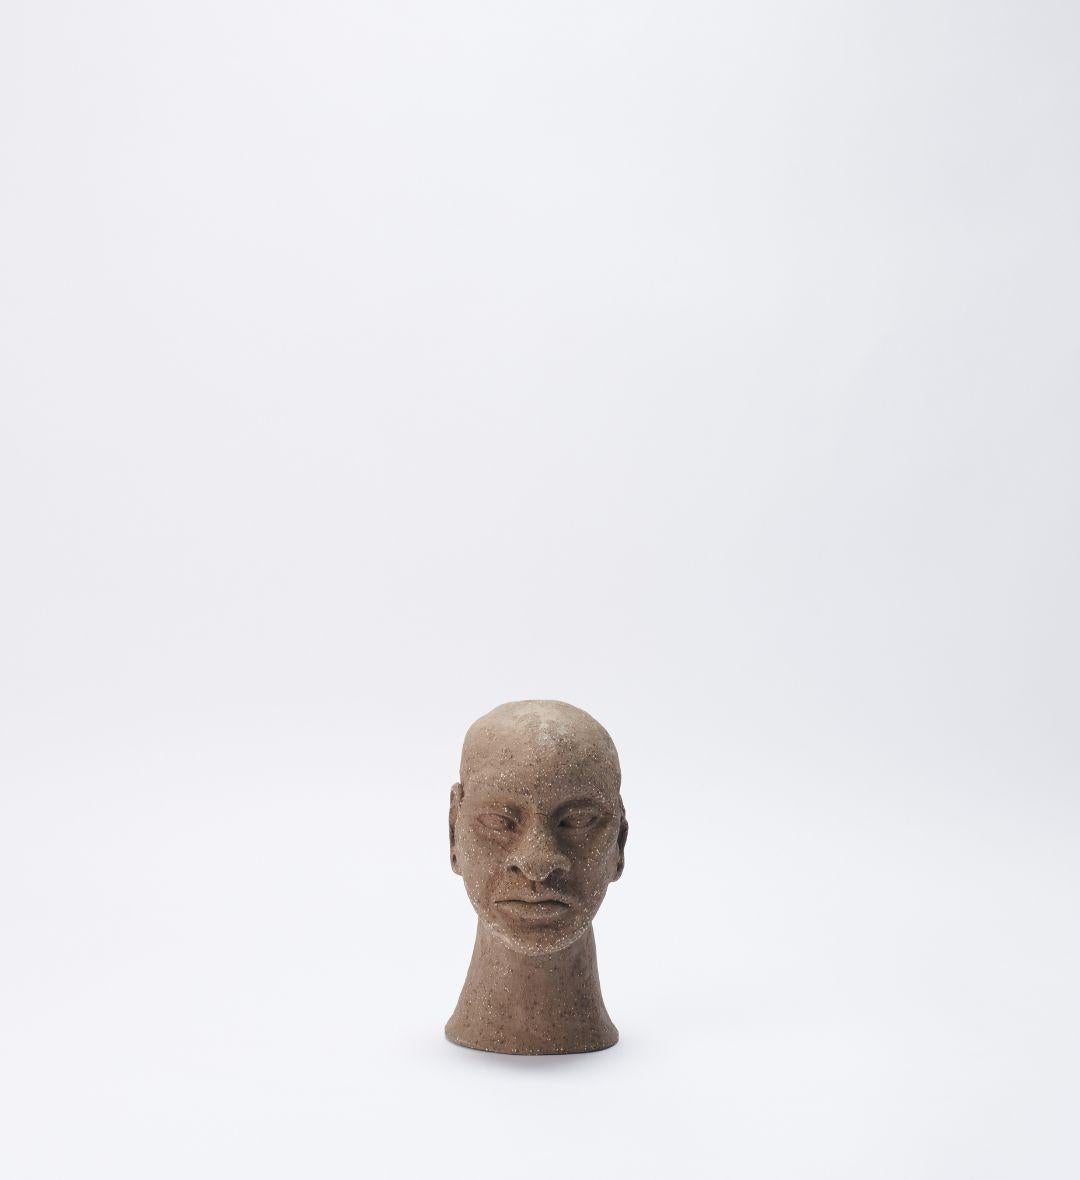 Ori 02 Skulptur von Joana Kieppe
Einzigartiges Stück.
Abmessungen: T 13 x B 10 x H 17 cm.
MATERIALIEN: Schwarzer Niedertemperaturton mit weißem Grog.

Alle Stücke werden aus hochwertigem brasilianischem Wildton hergestellt, die Hochtemperaturstücke